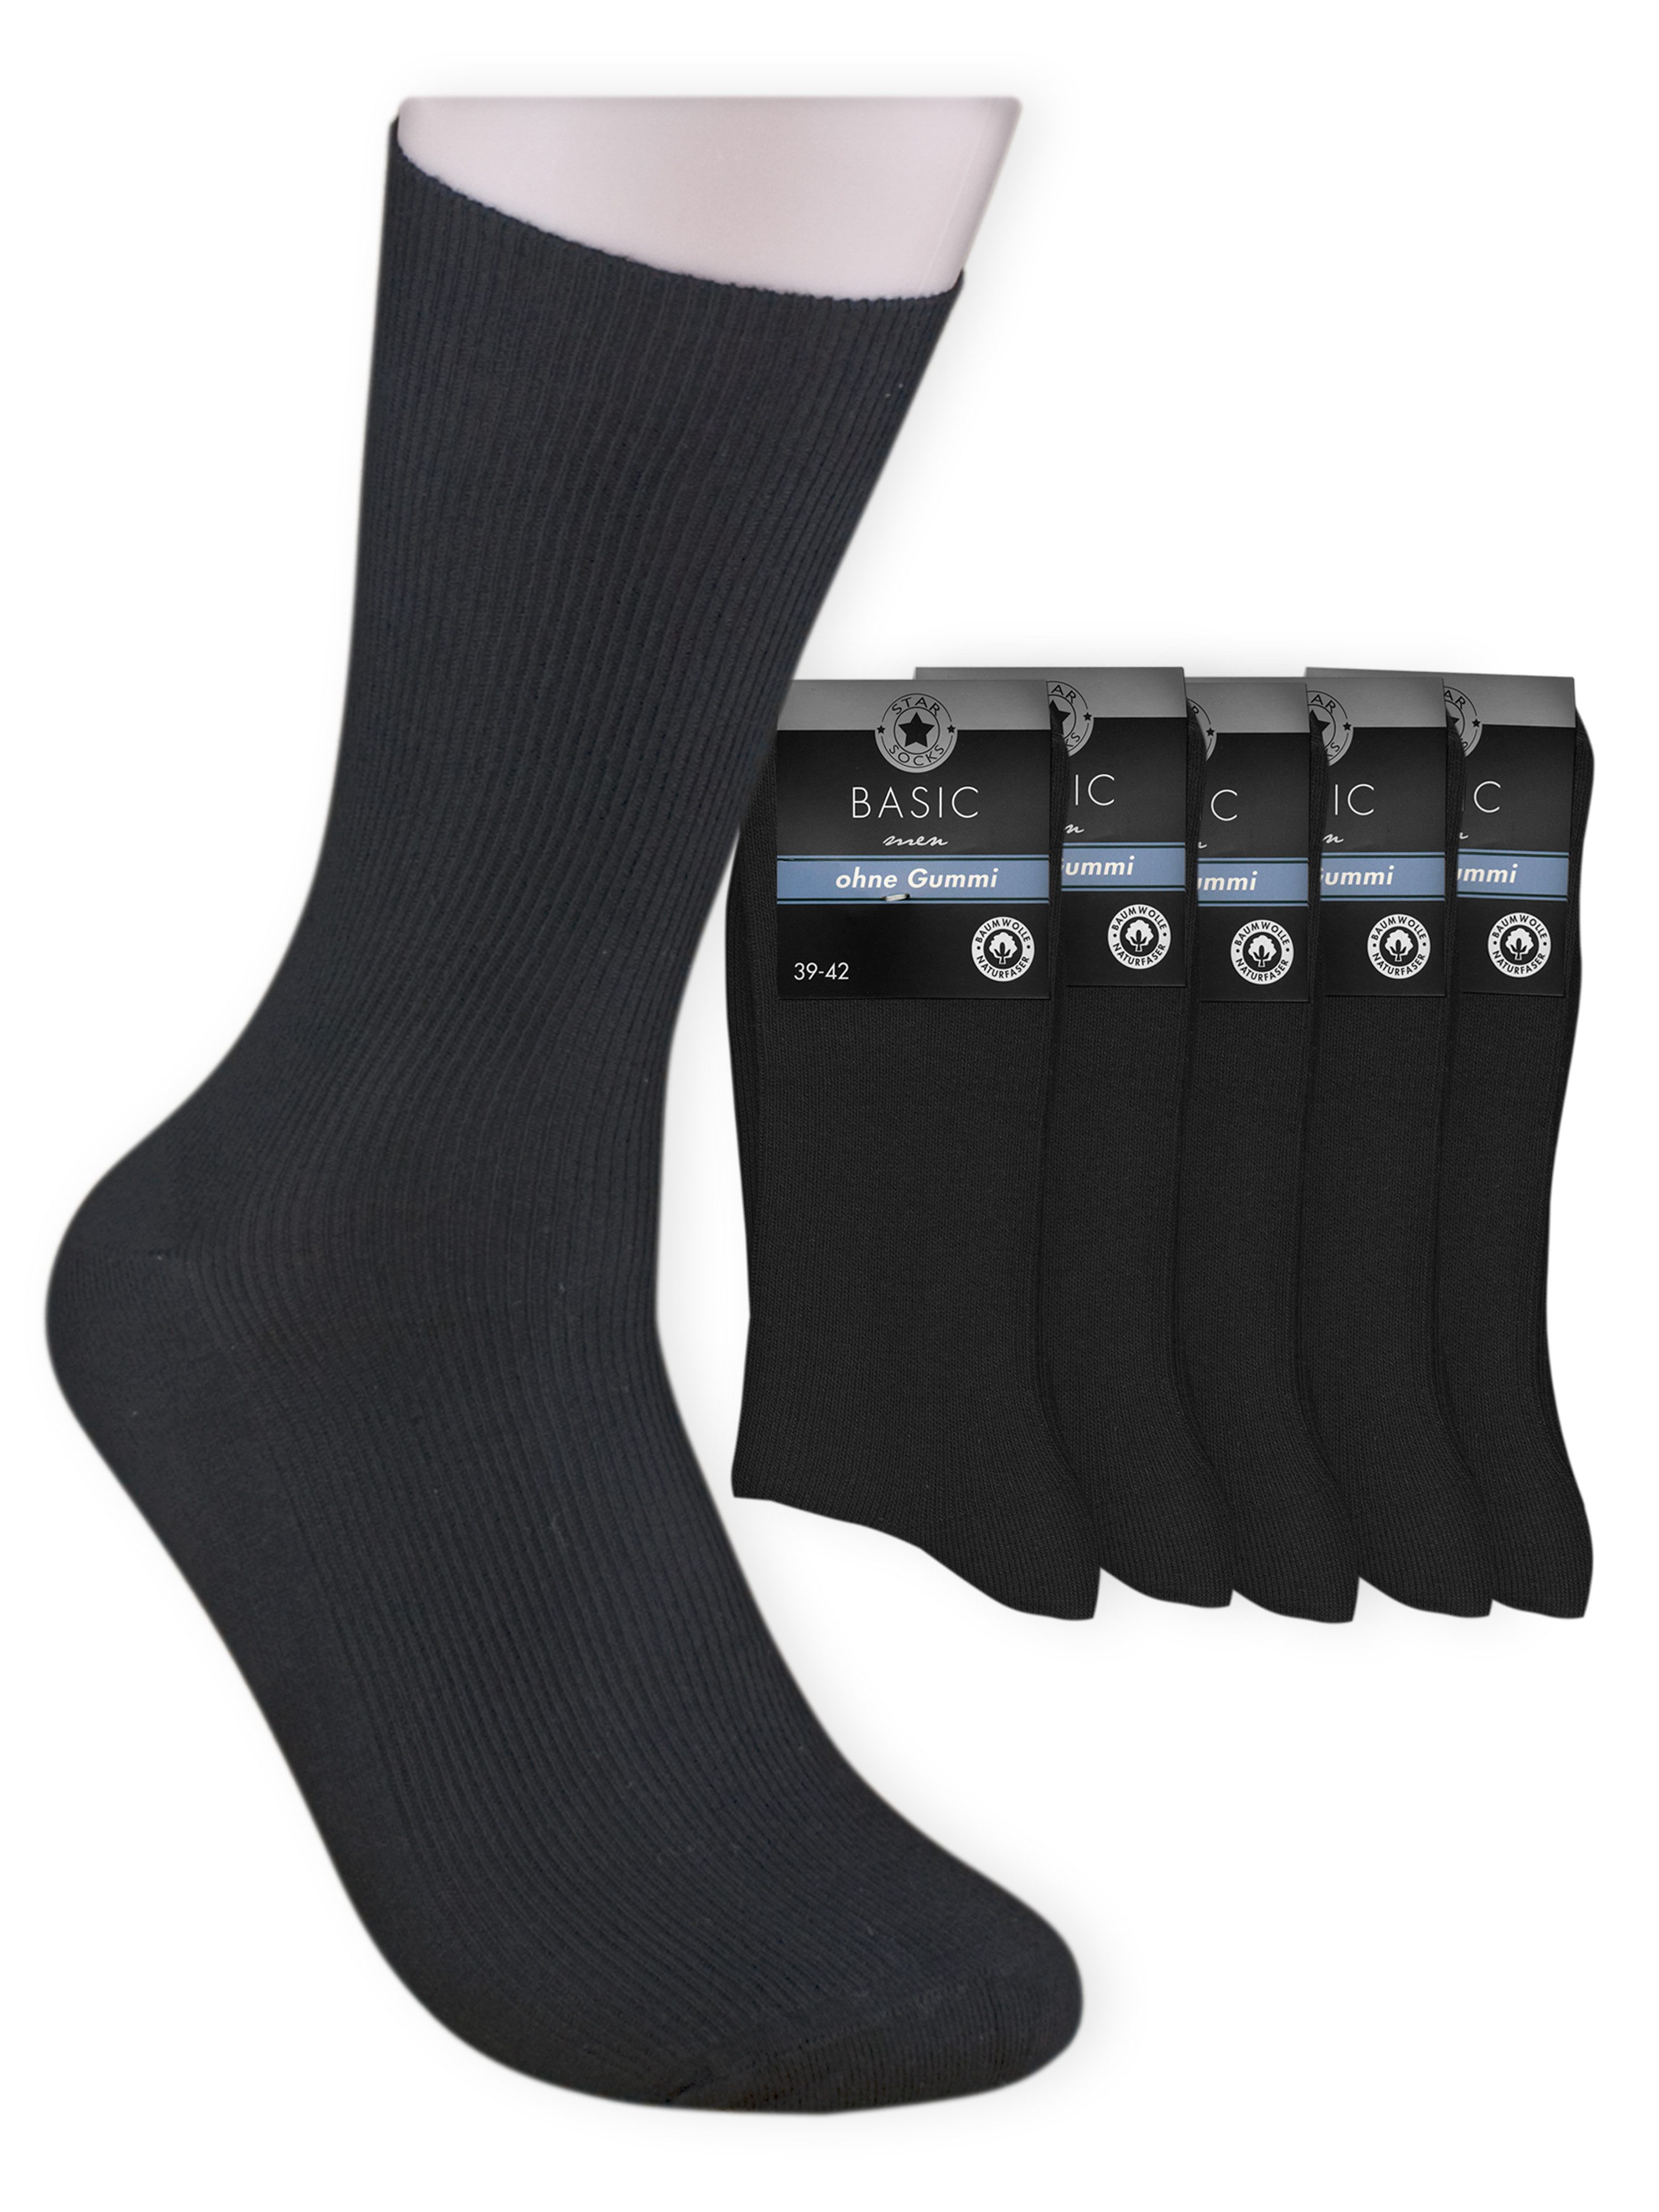 Die Шкарпеткиbude Basicsocken BASIC - Herrensocken (Bund, 5-Paar, schwarz) Diabetikersocken ohne Gummi aus 100 % Baumwolle